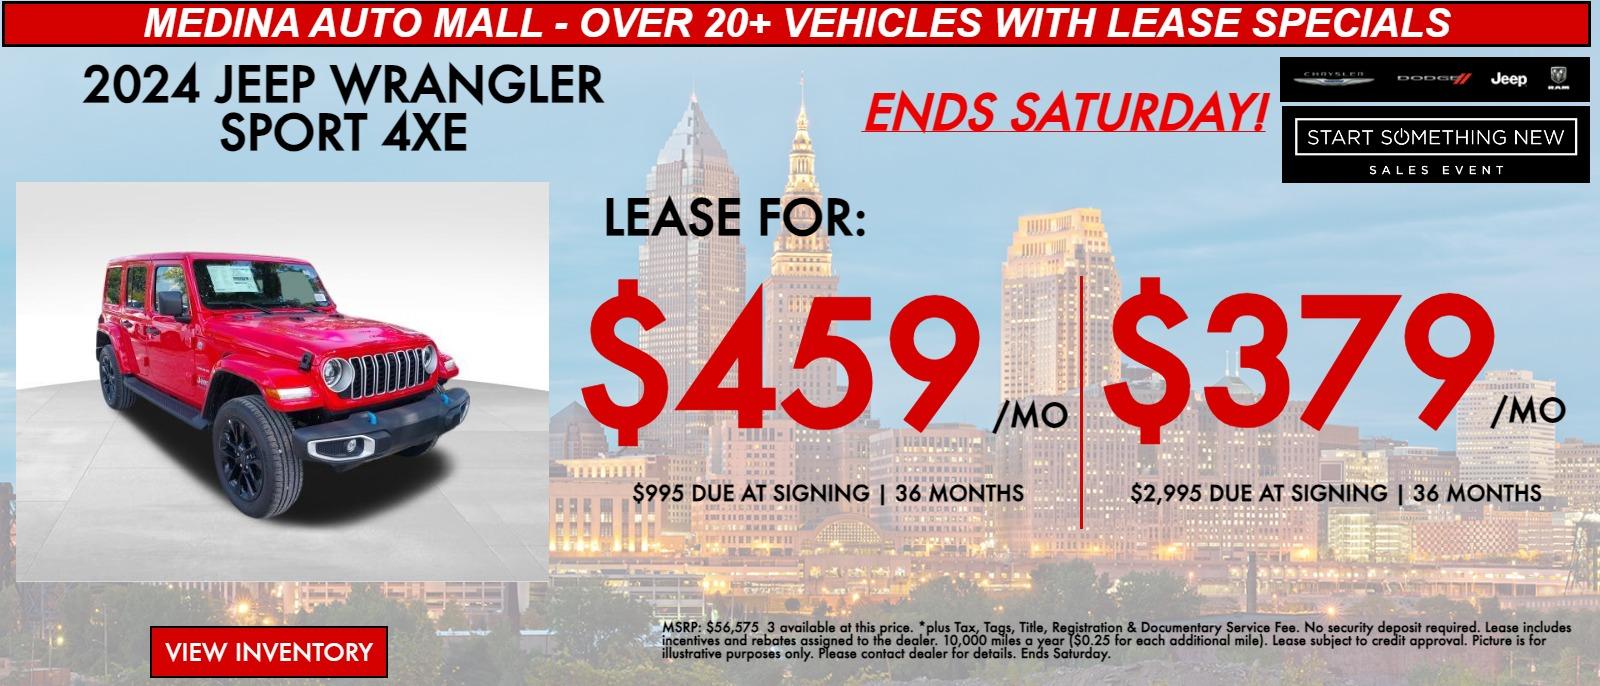 2024 Jeep Wrangler Lease Specials for Cleveland & Medina Medina Auto Mall